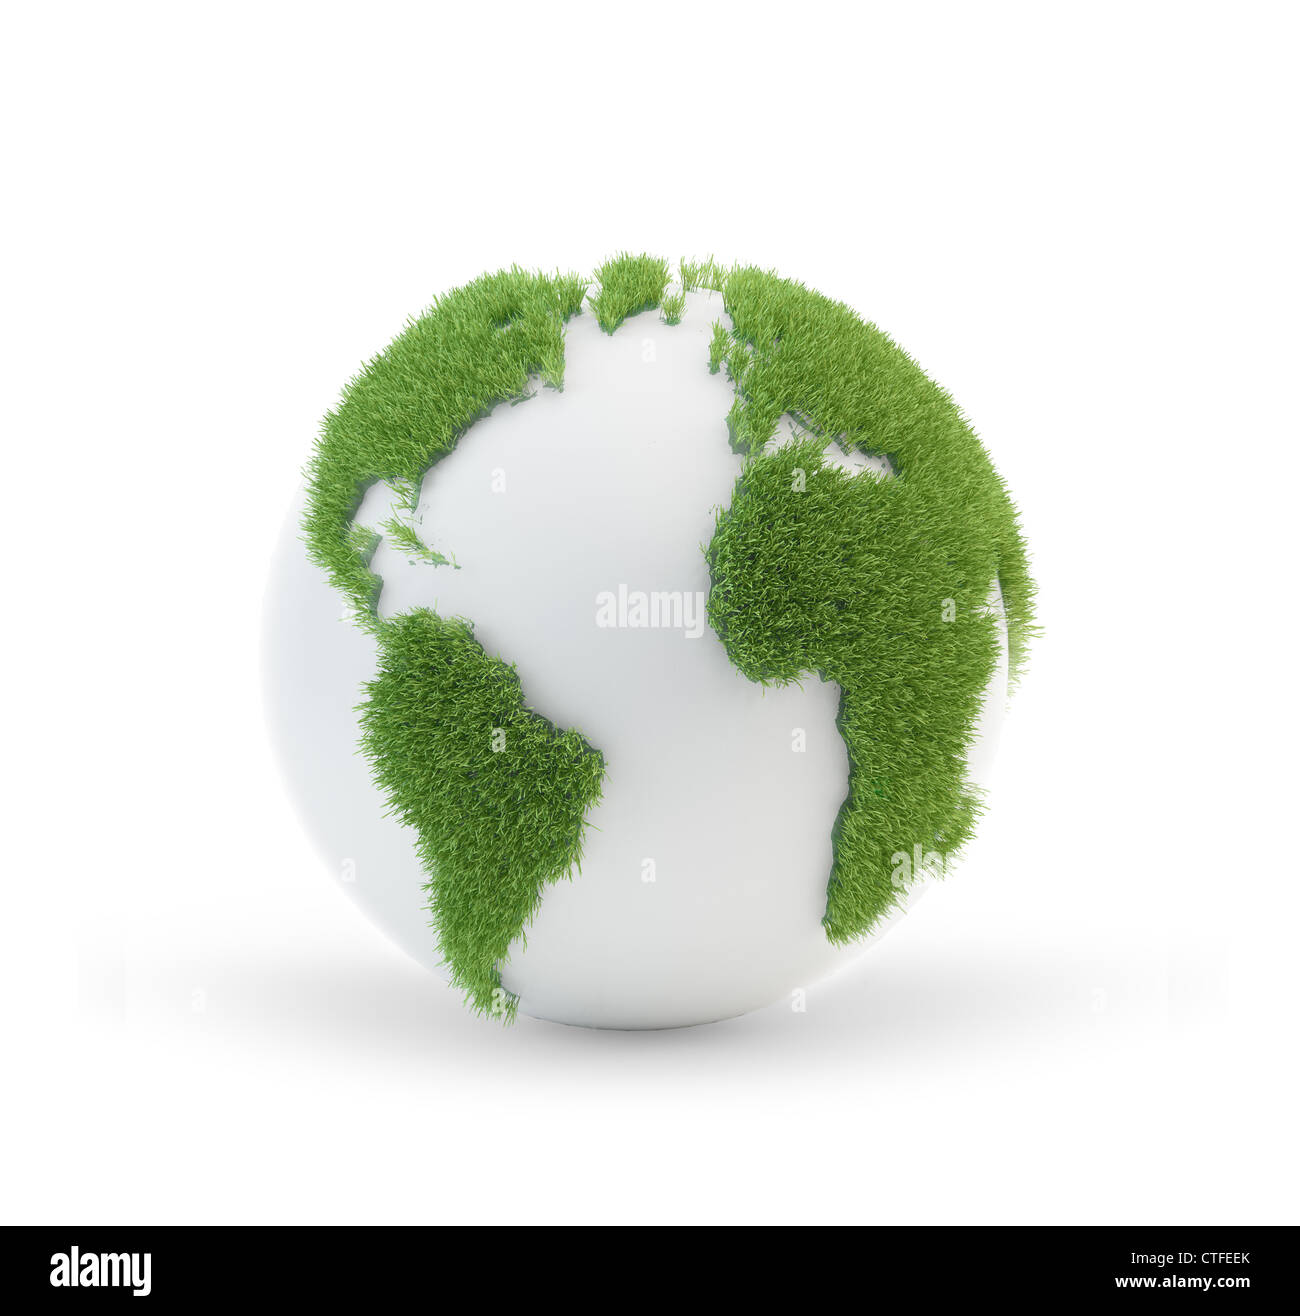 Globe de la terre couverte d'herbe avec contours des continents Banque D'Images